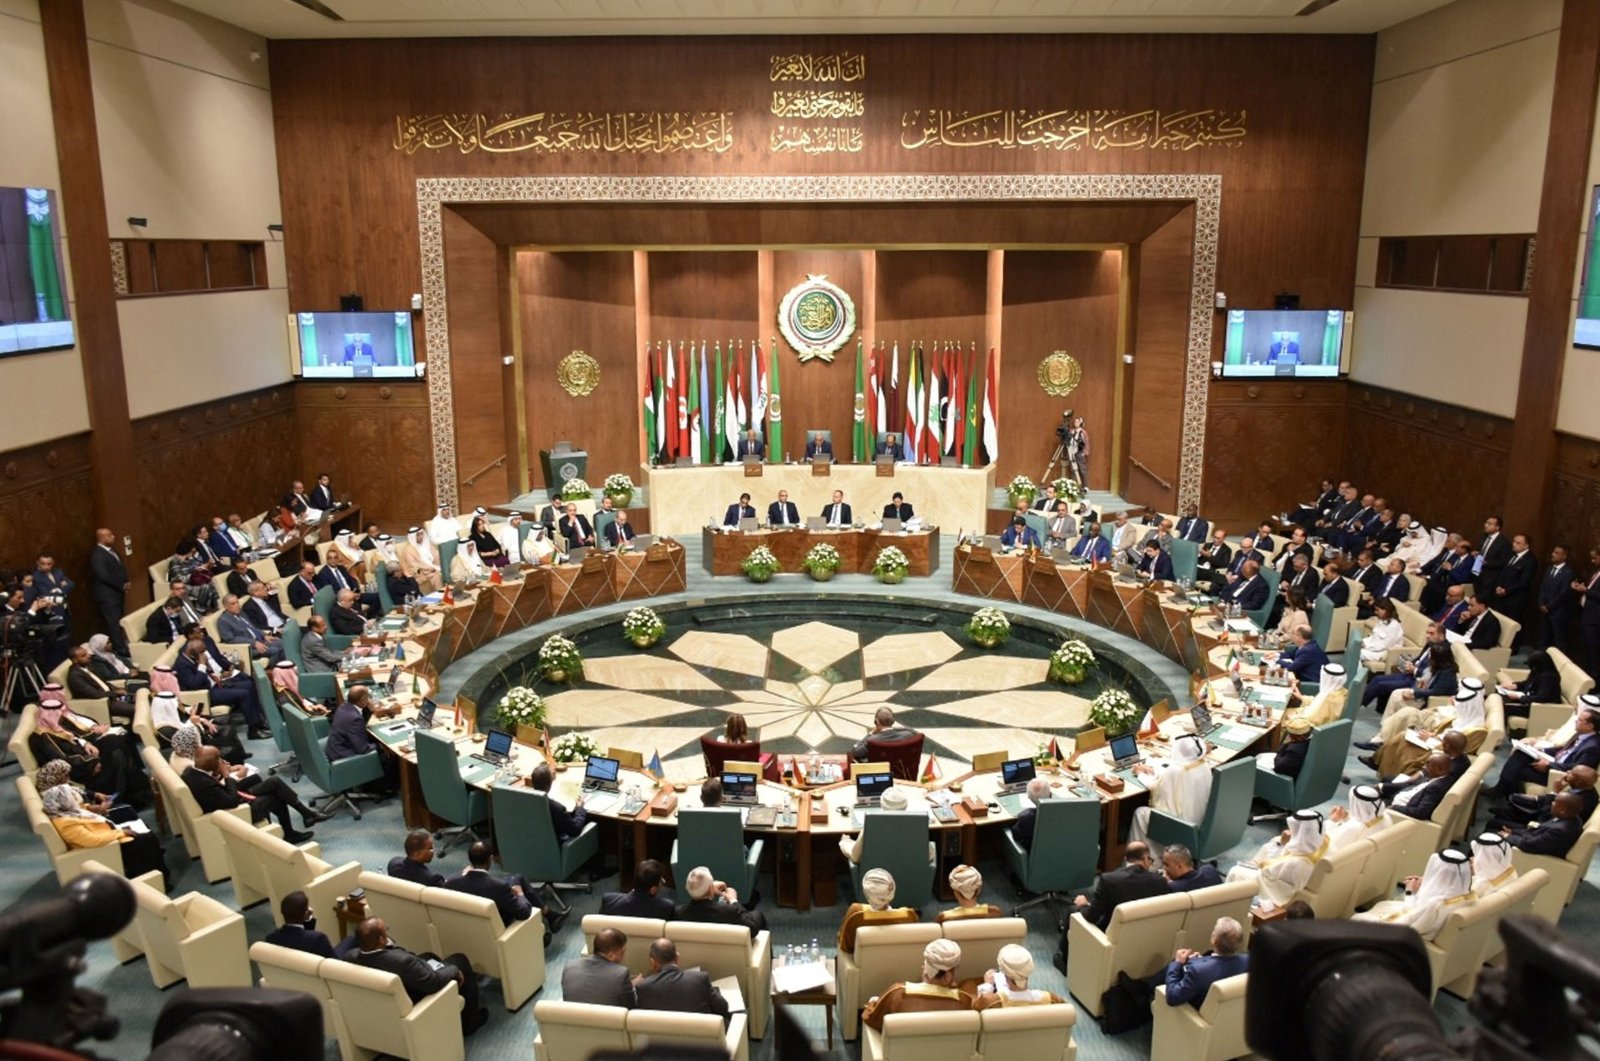 Mesir memprotes pertemuan Liga Arab atas pertikaian kepresidenan Libya